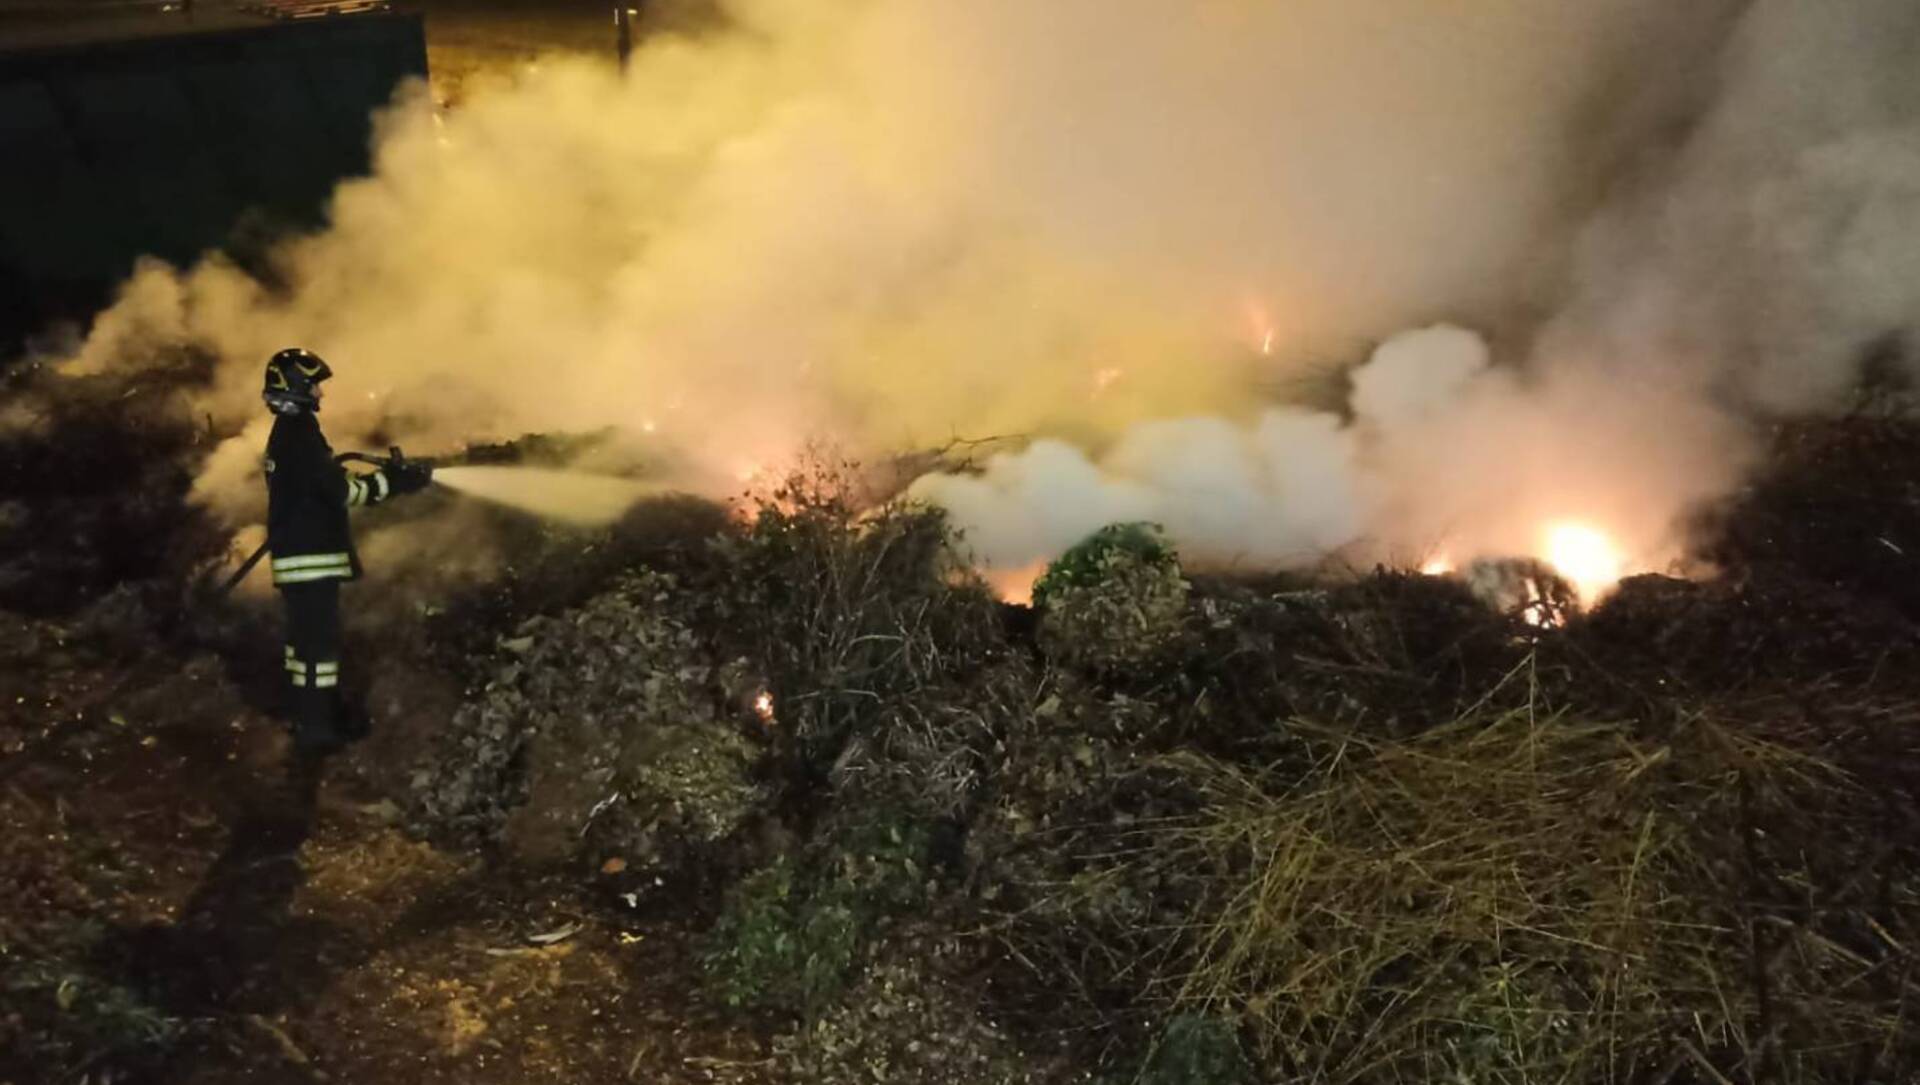 Incendio alla piattaforma ecologica: vigili del fuoco nella notte a Cislago